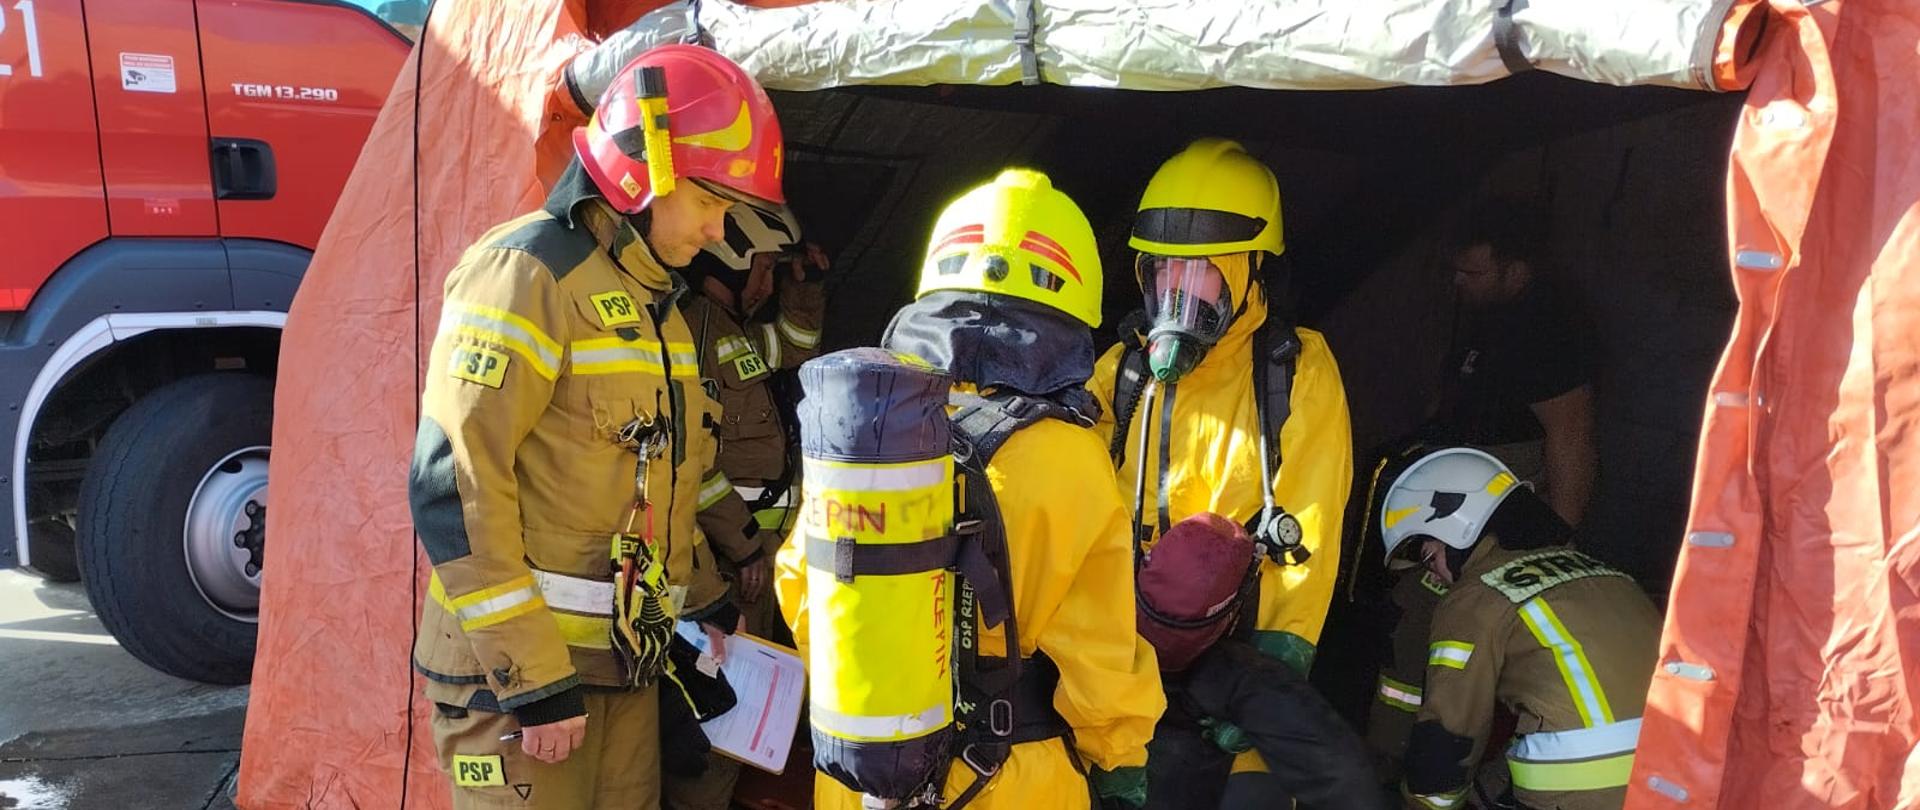 Strażacy w ubraniach ochrony chemicznej podczas ewakuacji manekina symulującego nieprzytomną osobę poszkodowaną.